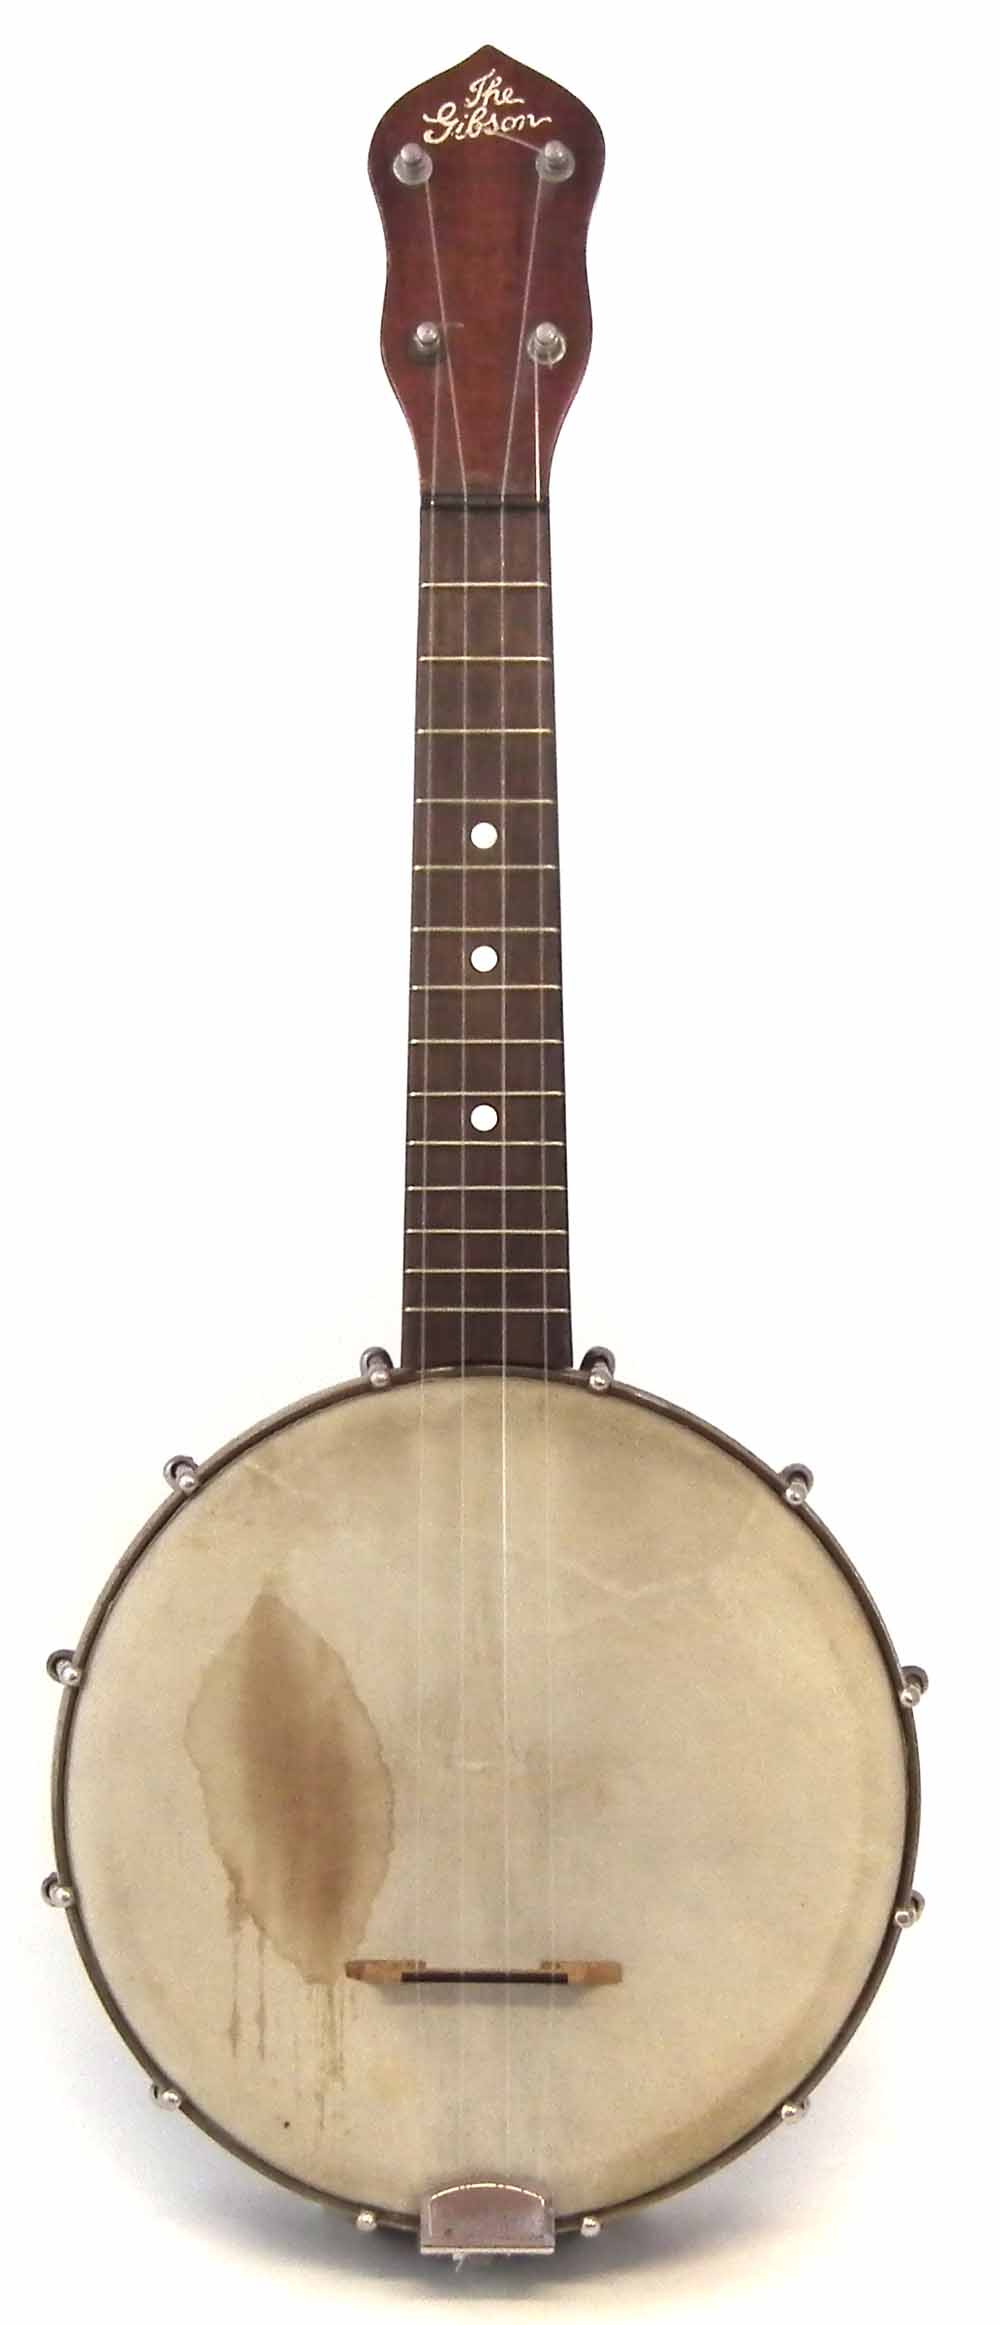 Gibson UB2 Banjolele or Ukulele Banjo with fourteen fret neck, 55cm overall length